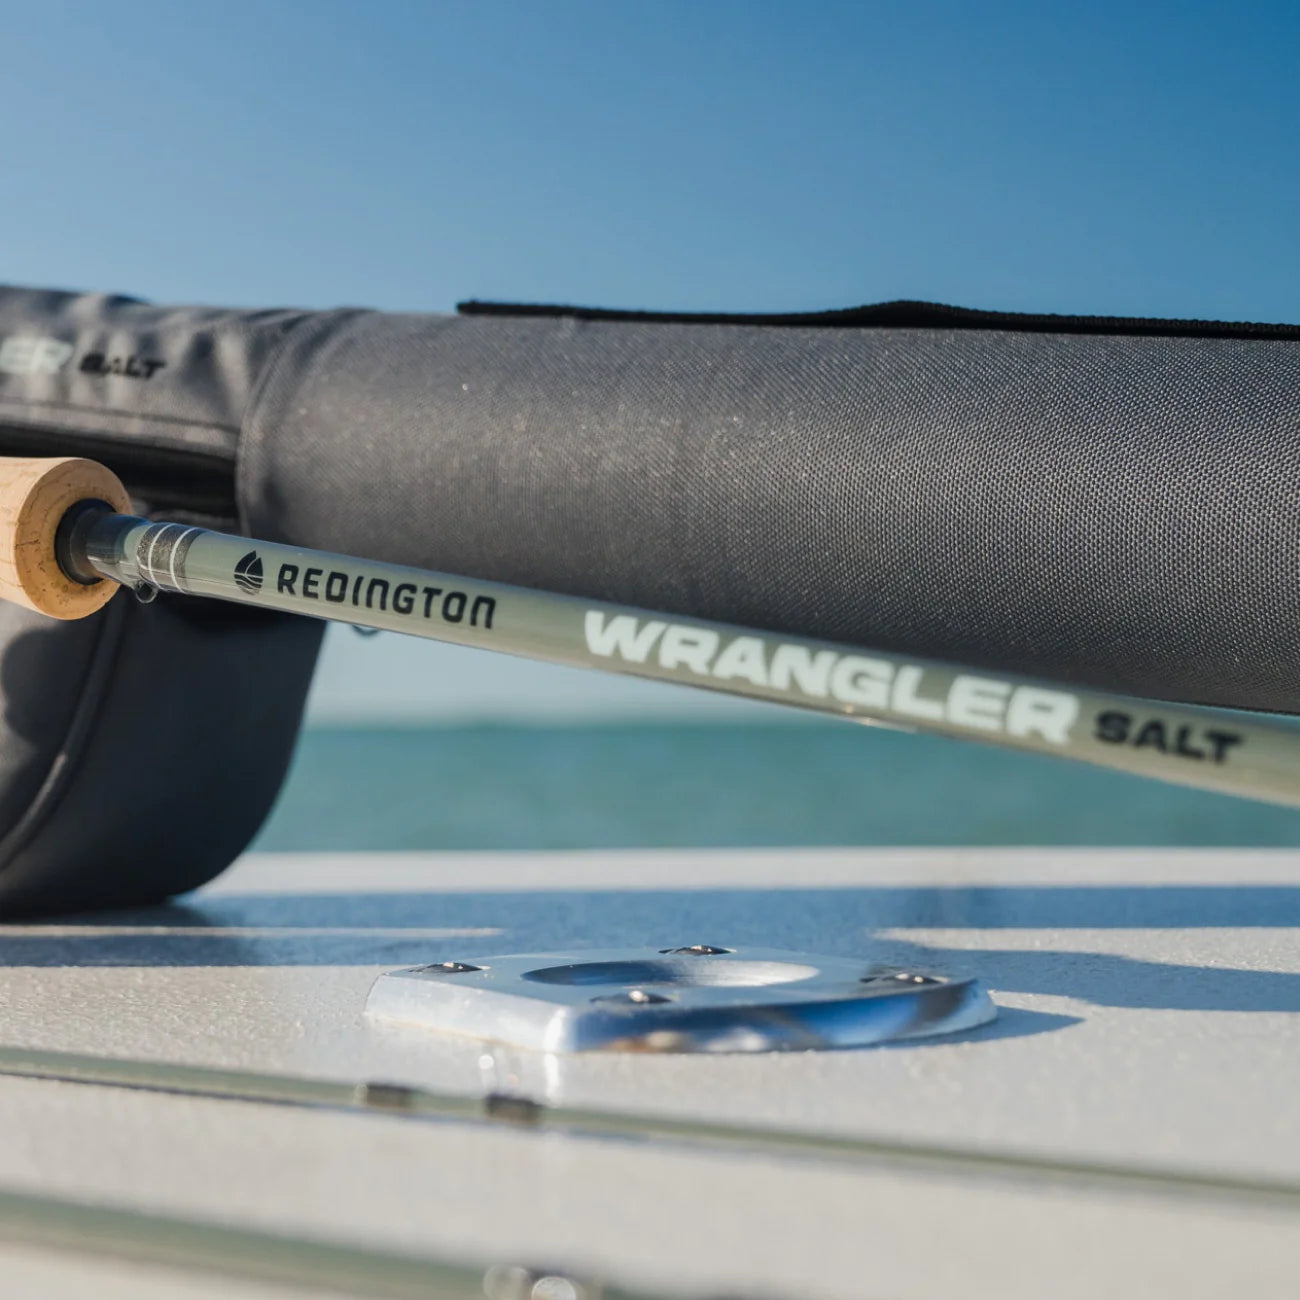 Redington releases new WRANGLER fly rod + combo kit